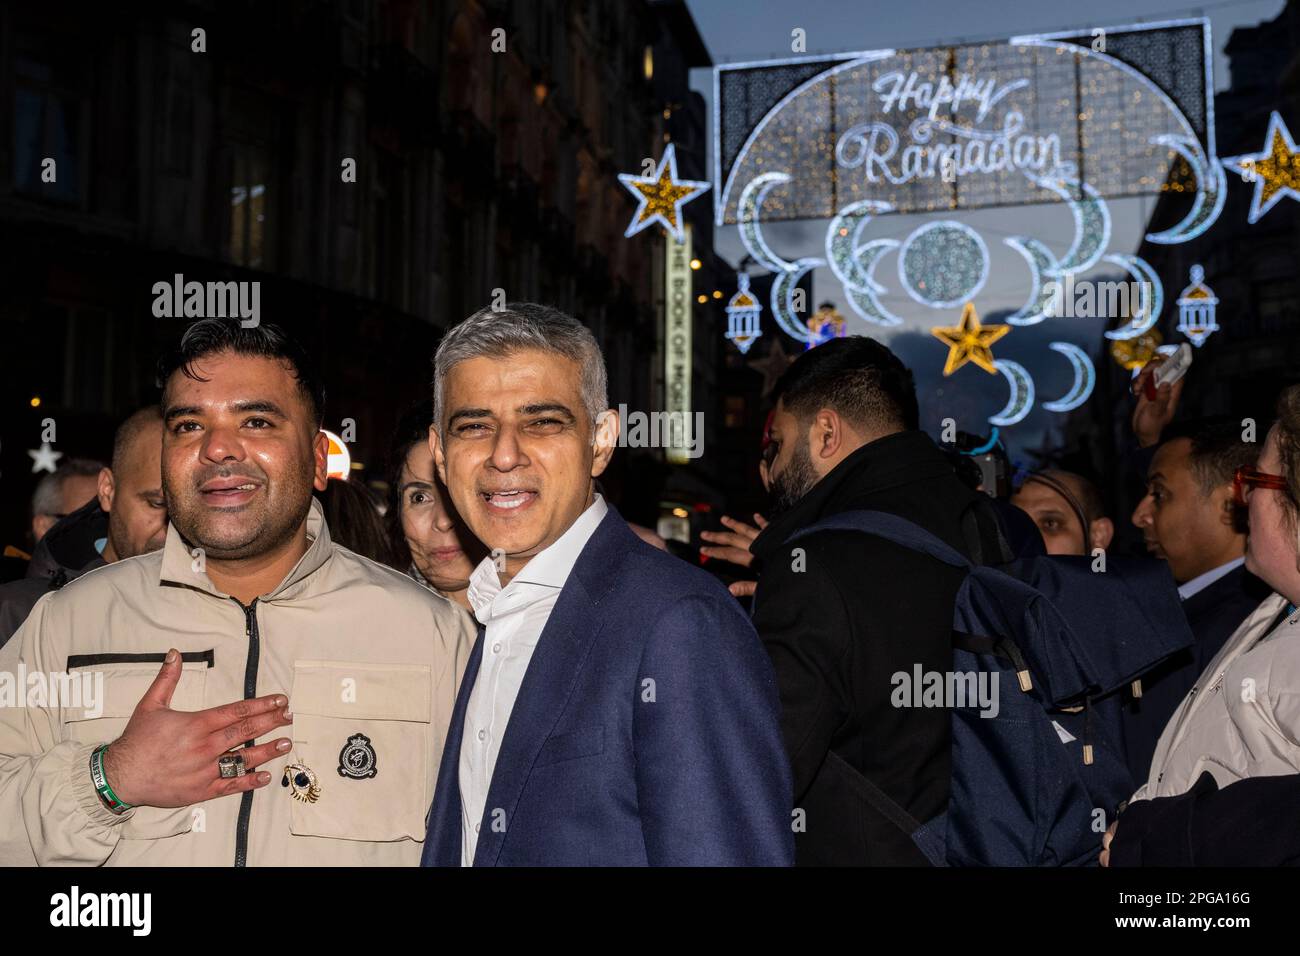 Londres, Reino Unido. 21 de marzo de 2023. (L) Naughty Boy, cantante, y Sadiq Khan, alcalde de Londres, en el encendido de la primera instalación de luces de Ramadán en Piccadilly Circus en la víspera del primer día de Ramadán 2023. Las luces de esta escala son las primeras en el Reino Unido y Europa, con 30.000 luces sostenibles iluminadas en el centro de Londres durante todo el mes de Ramadán. Crédito: Stephen Chung / Alamy Live News Foto de stock